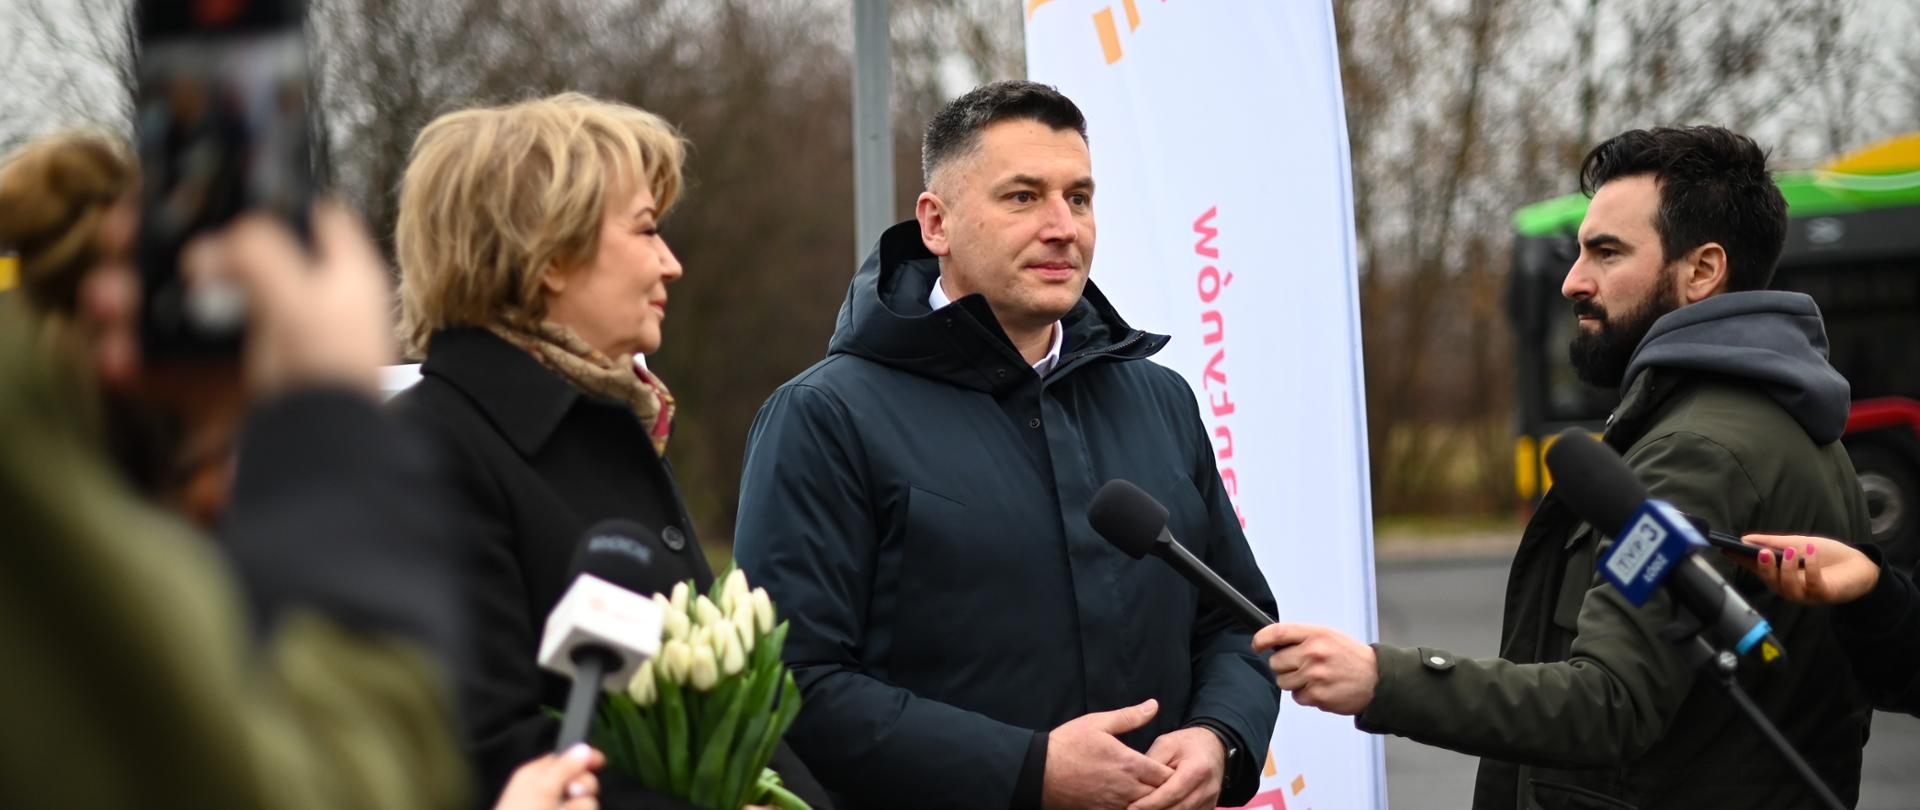 Zdjęcie z konferencji prasowej burmistrza Roberta Jakubowskiego i prezydent Hanny Zdanowskiej. W tle żagiel z logo Konstantynowa. Po bokach dziennikarze trzymający mikrofony.